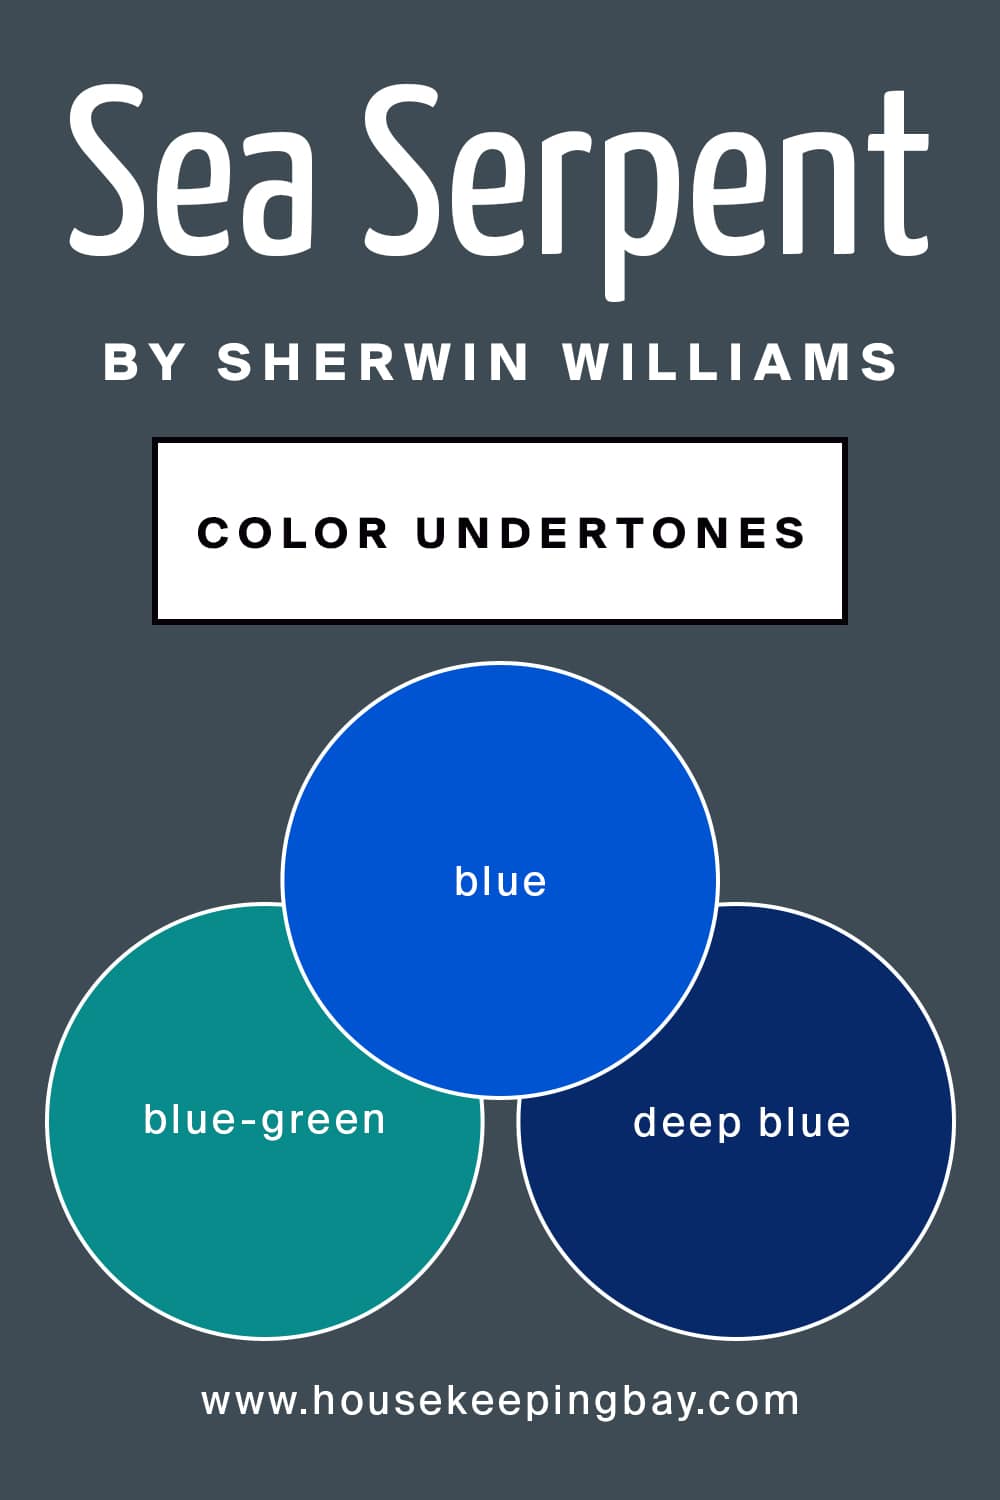 Sea Serpent by Sherwin Williams Color Undertones